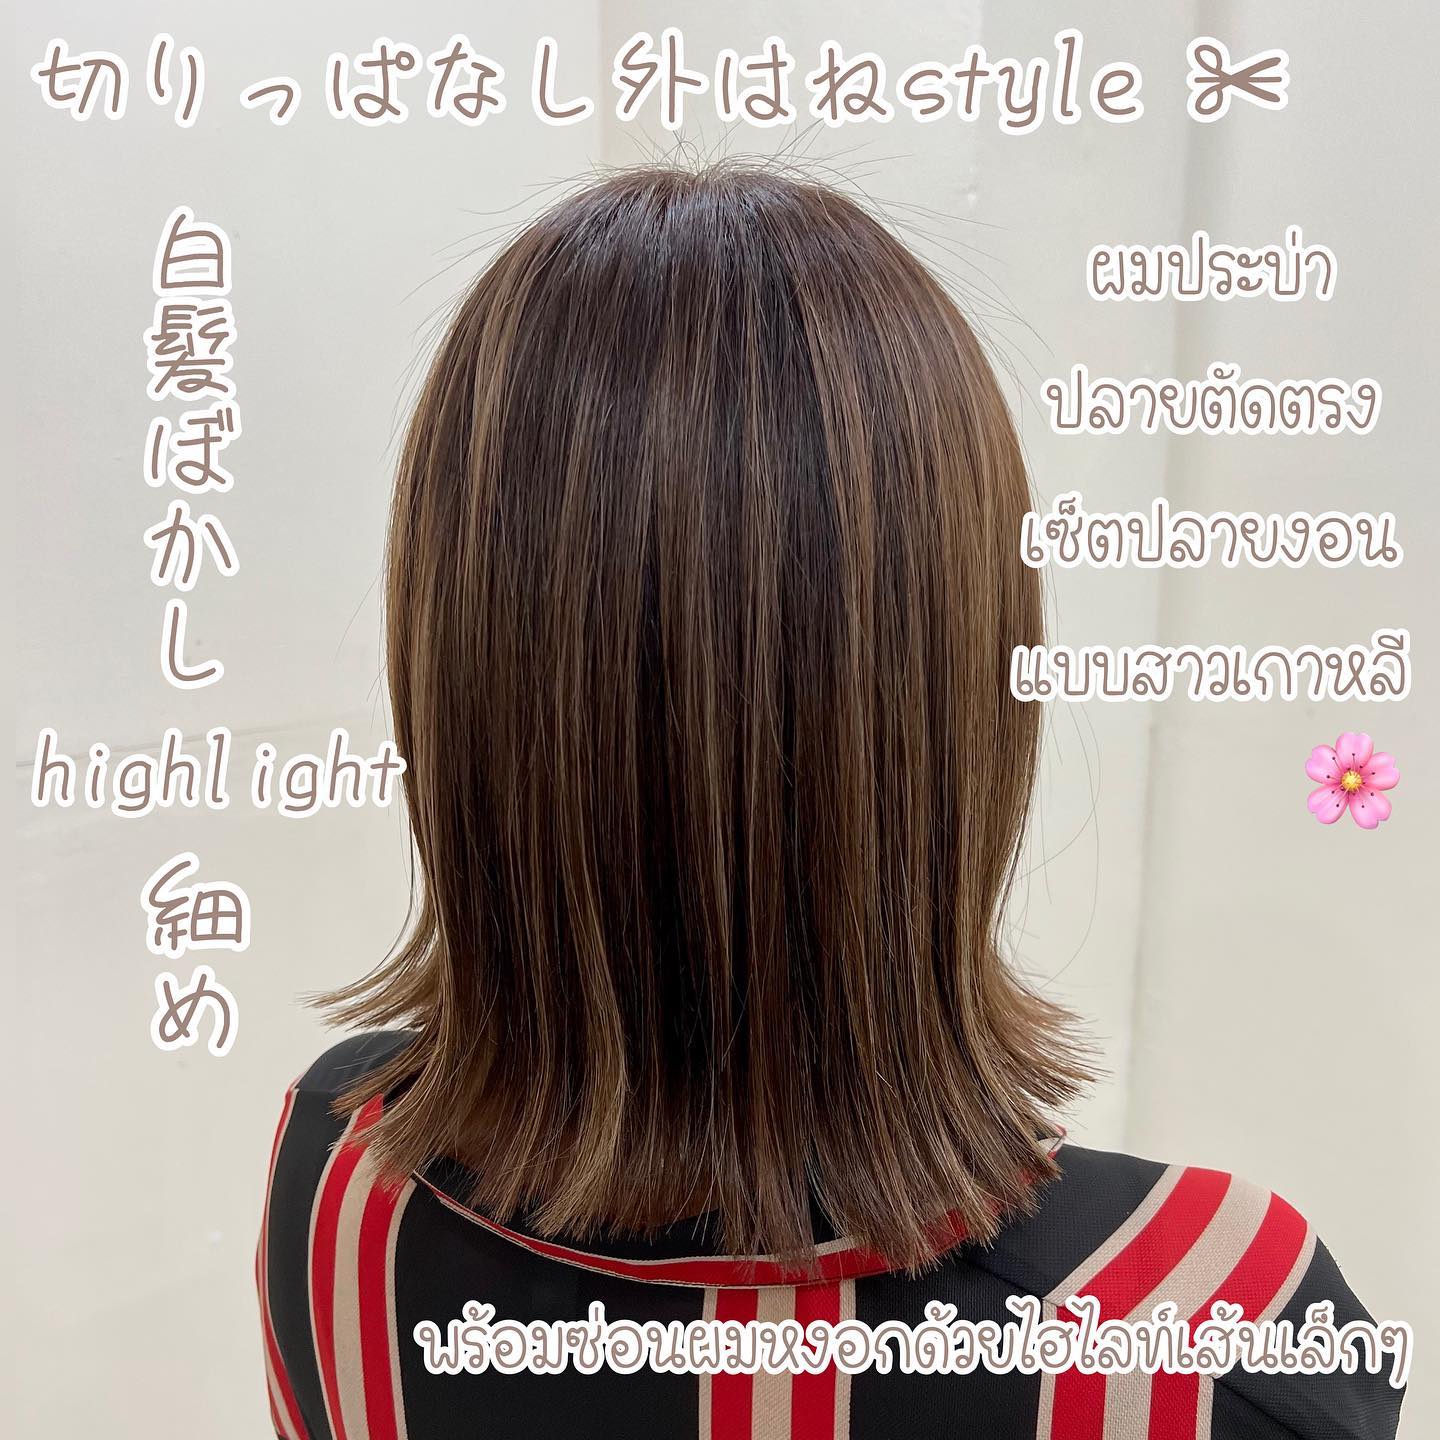 ทรงผมประบ่าแบบสาวญี่ปุ่น เกาหลีที่ต้องไม่พลาด️สำหรับคุณแม่ที่ผมหงอกเริ่มขึ้น ก็สามารถซ่อนผมขาวด้วยไฮไลท์เส้นเล็กๆ ได้เหมือนกันค่ะ🏽  Stylist HIROMI  YAMS hair&cafe  For booking/ご予約、お問い合わせ↓
LINE ID:@qai5573z
Tel:02-163-4973  Business hours/営業時間↓
9:00 - 18:00
Closed on Wednesday,2nd & 4th Thursday  #ร้านทำผมญี่ปุ่น #YAMShaircafe #ตัดผมญี่ปุ่น #ยืดผมญี่ปุ่น #ดัดผมญี่ปุ่น #ร้านทำผม #バンコク生活 #バンコク在住 #バンコク暮らし #バンコク子連れ美容室 #バンコク美容室 #japanesehairsalon